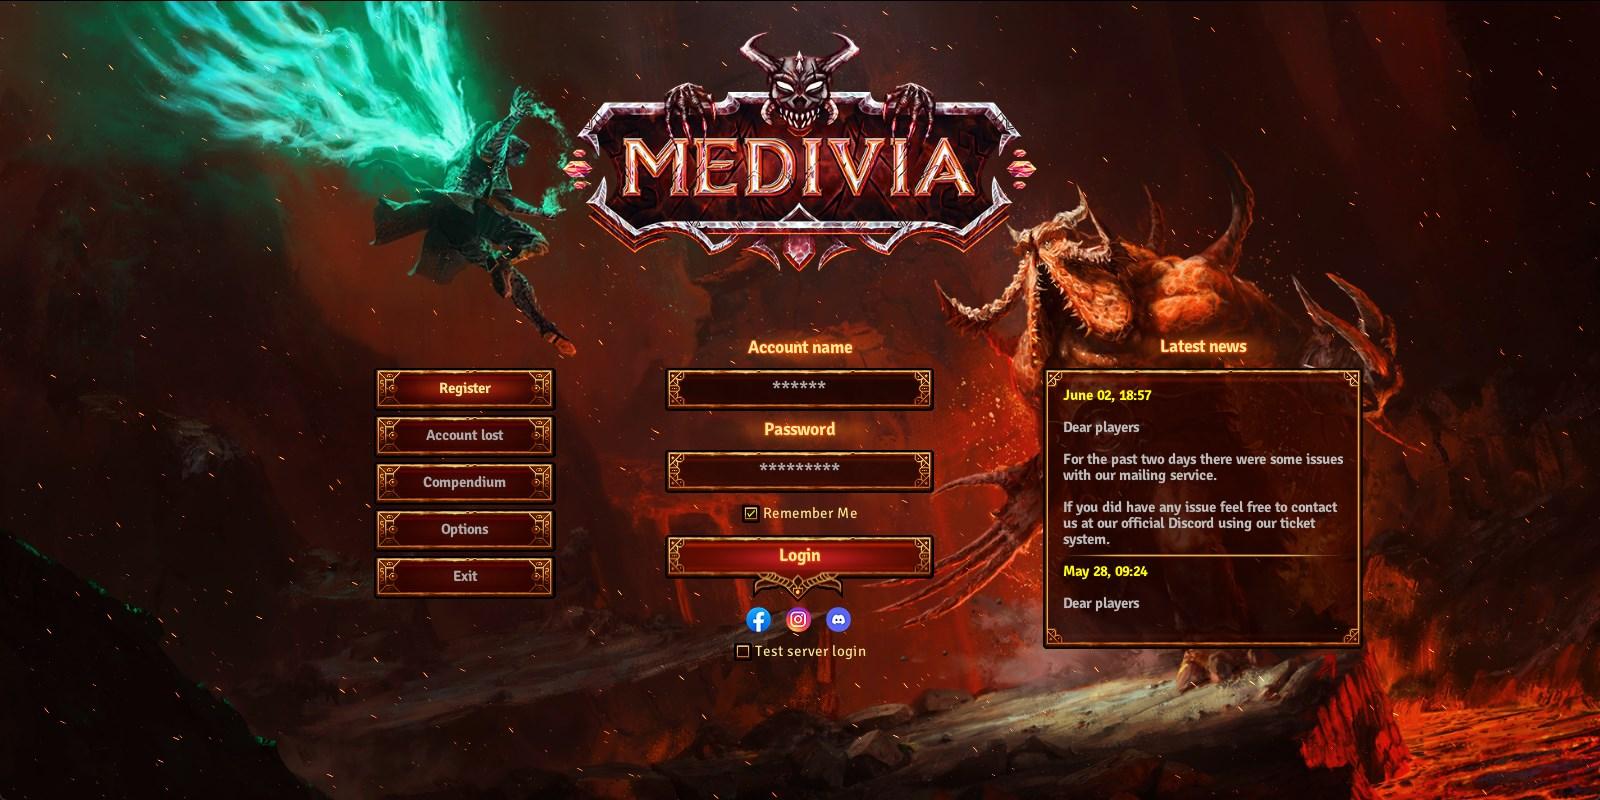 Medivia game details